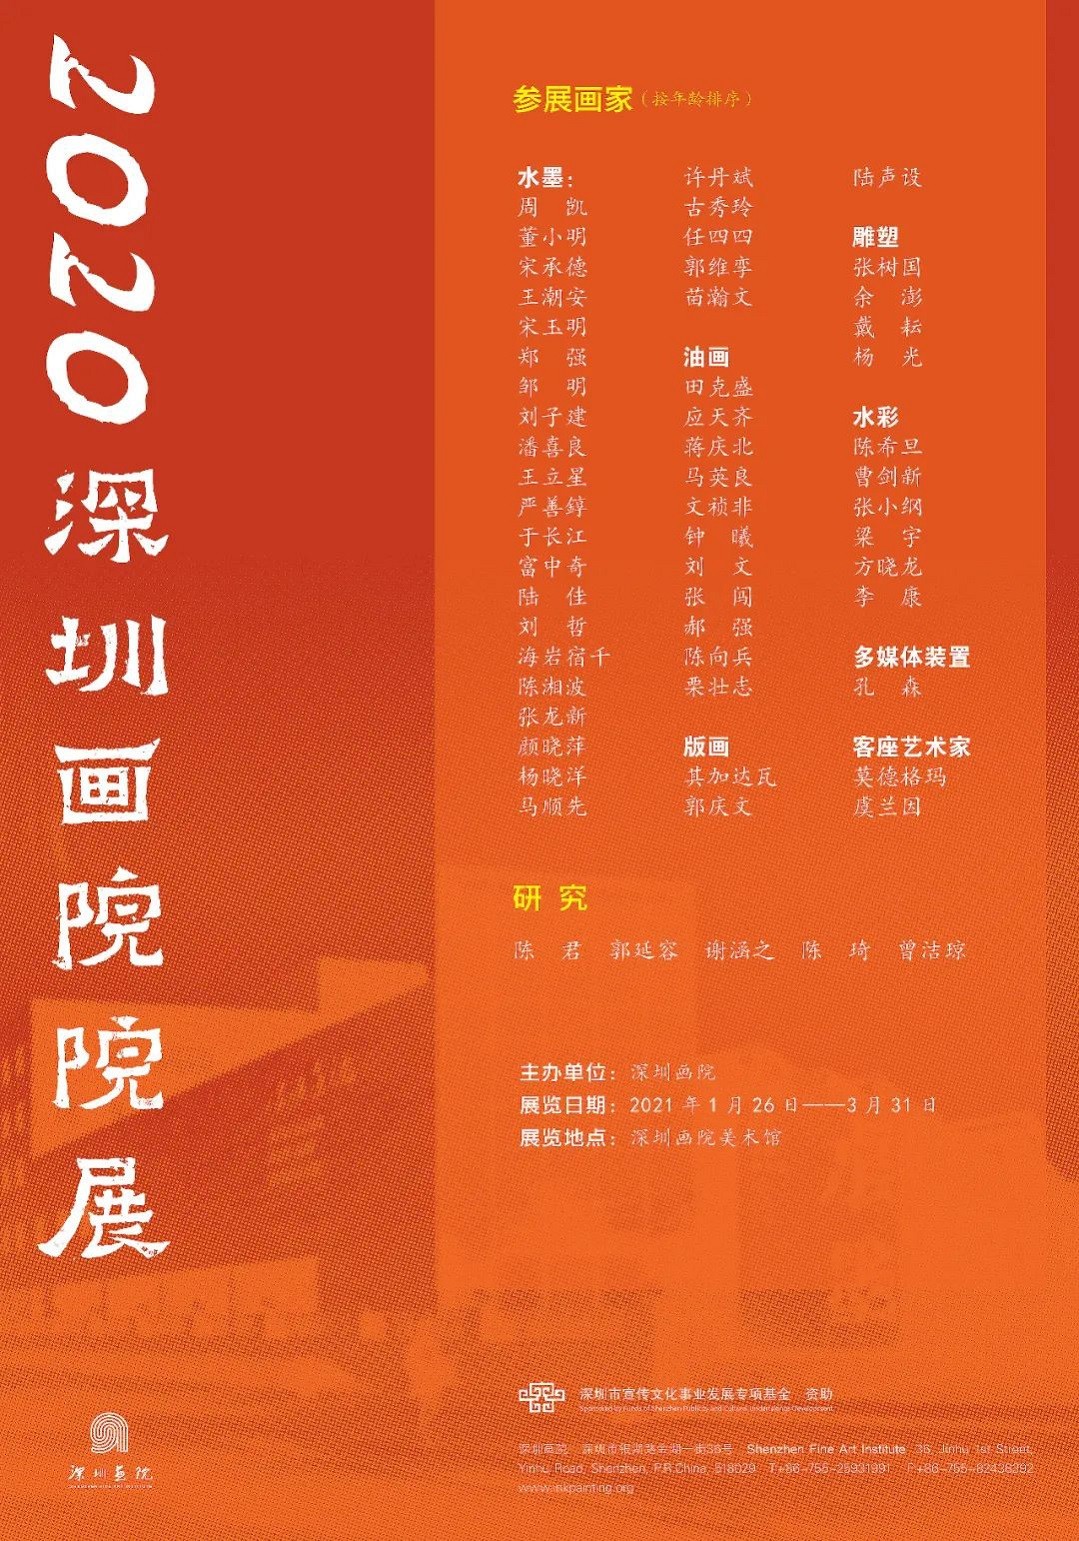 2020深圳画院院展